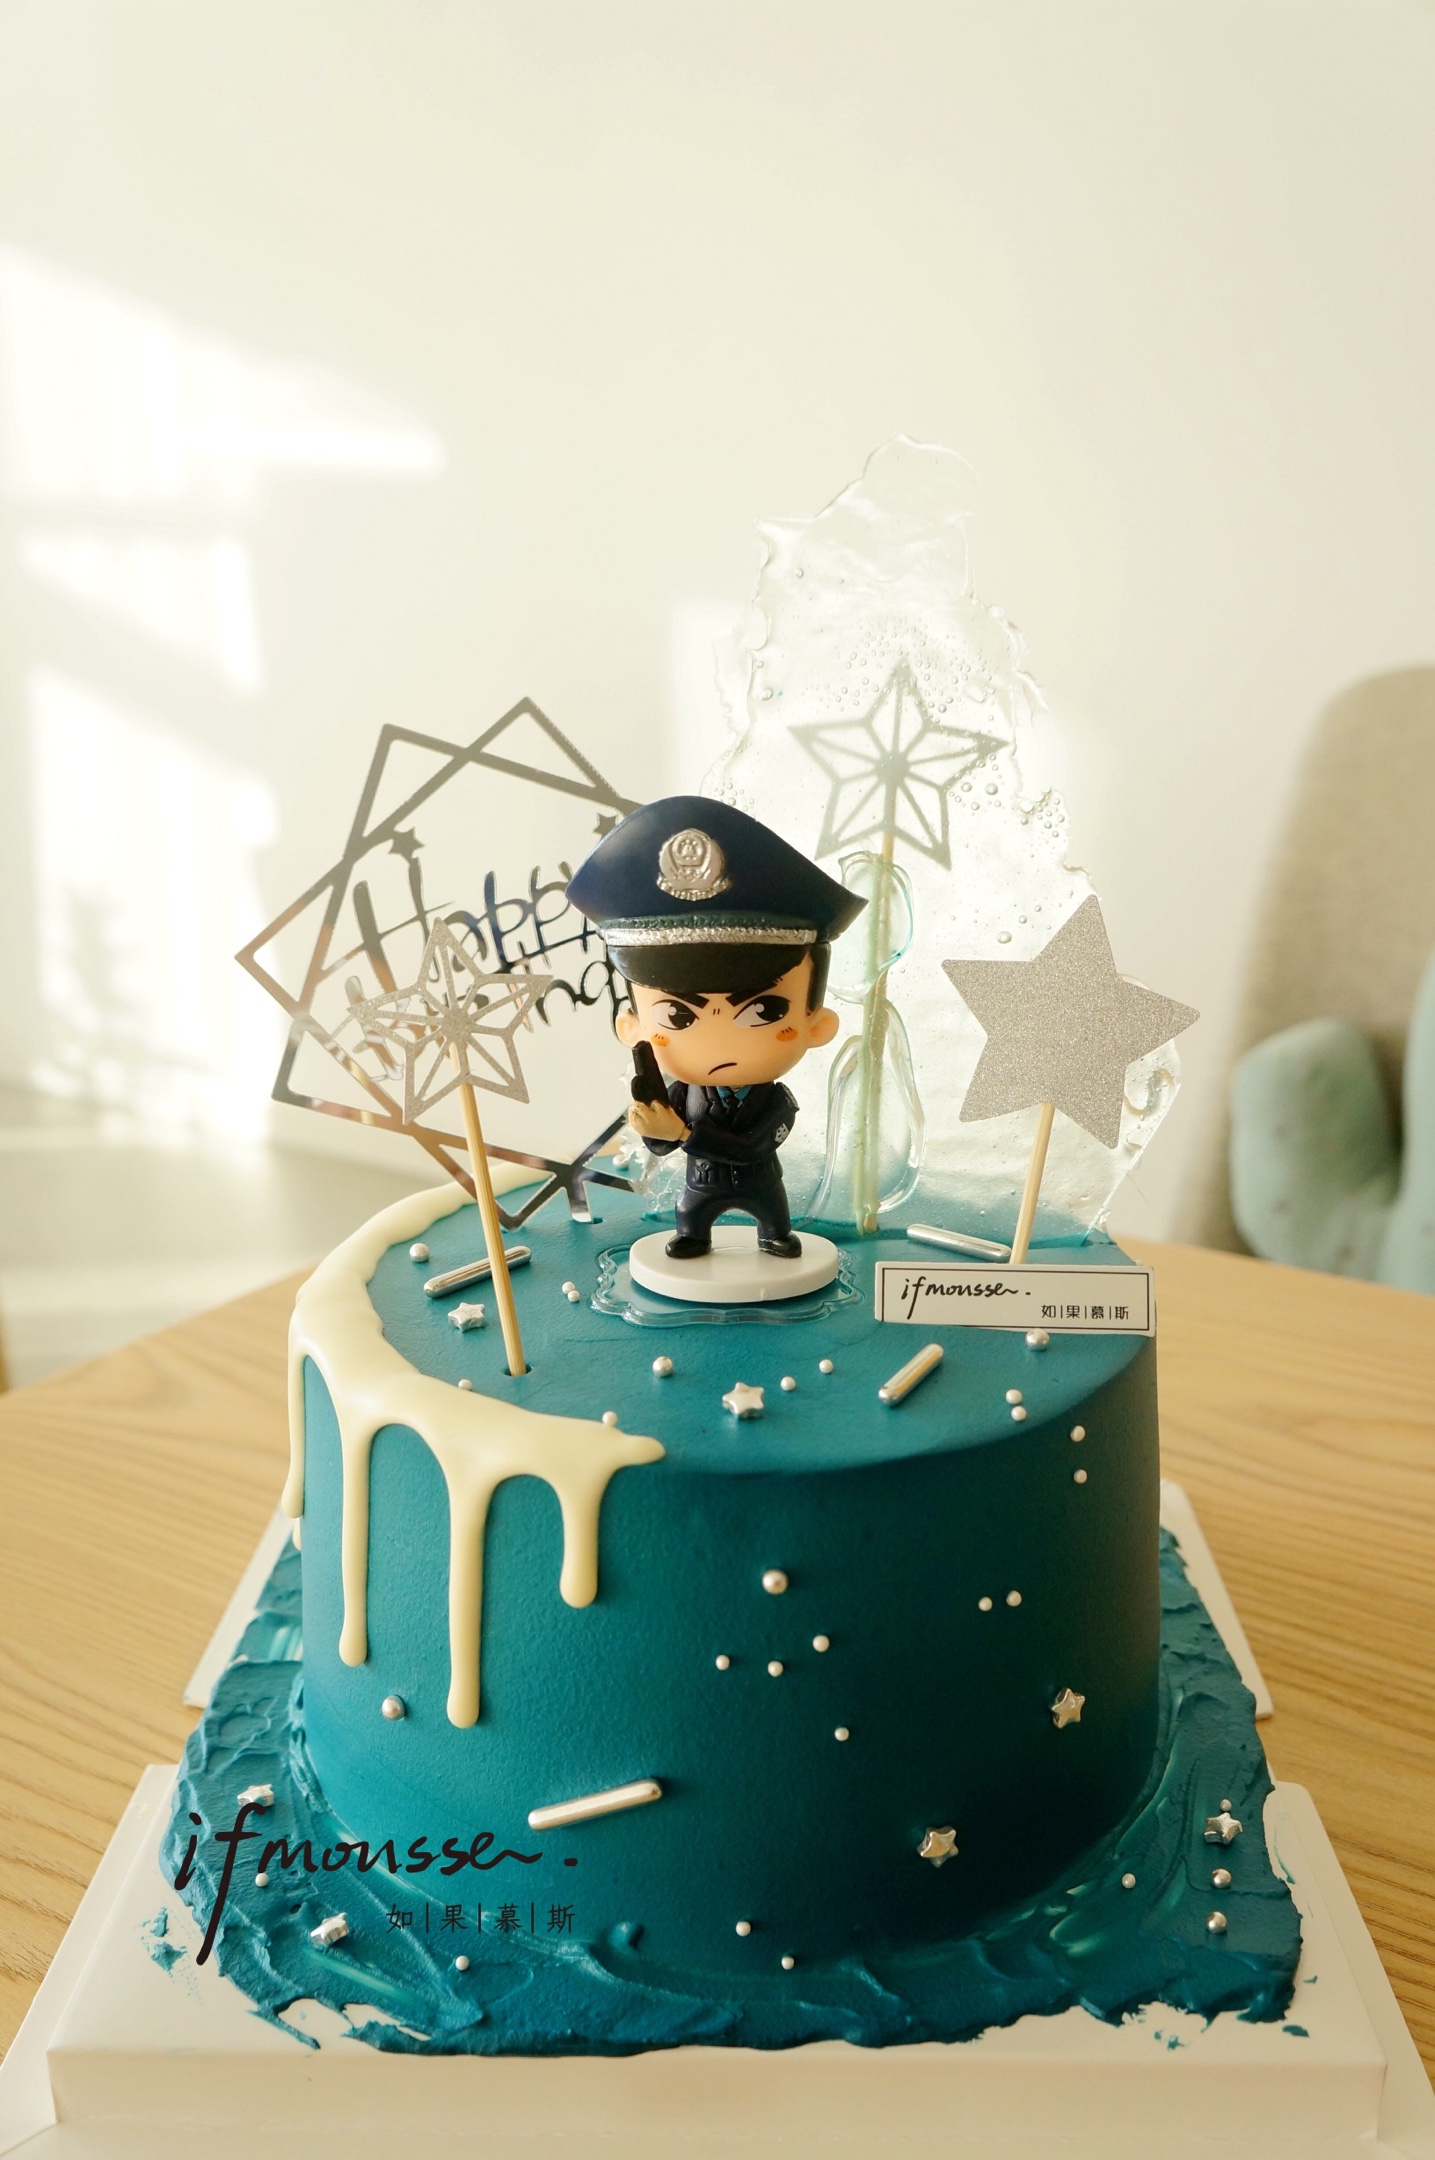 警察生日蛋糕字符动画片 向量例证. 插画 包括有 情感, 欢乐, 表达式, 照亮, 逗人喜爱, 可口, 许多 - 117210291